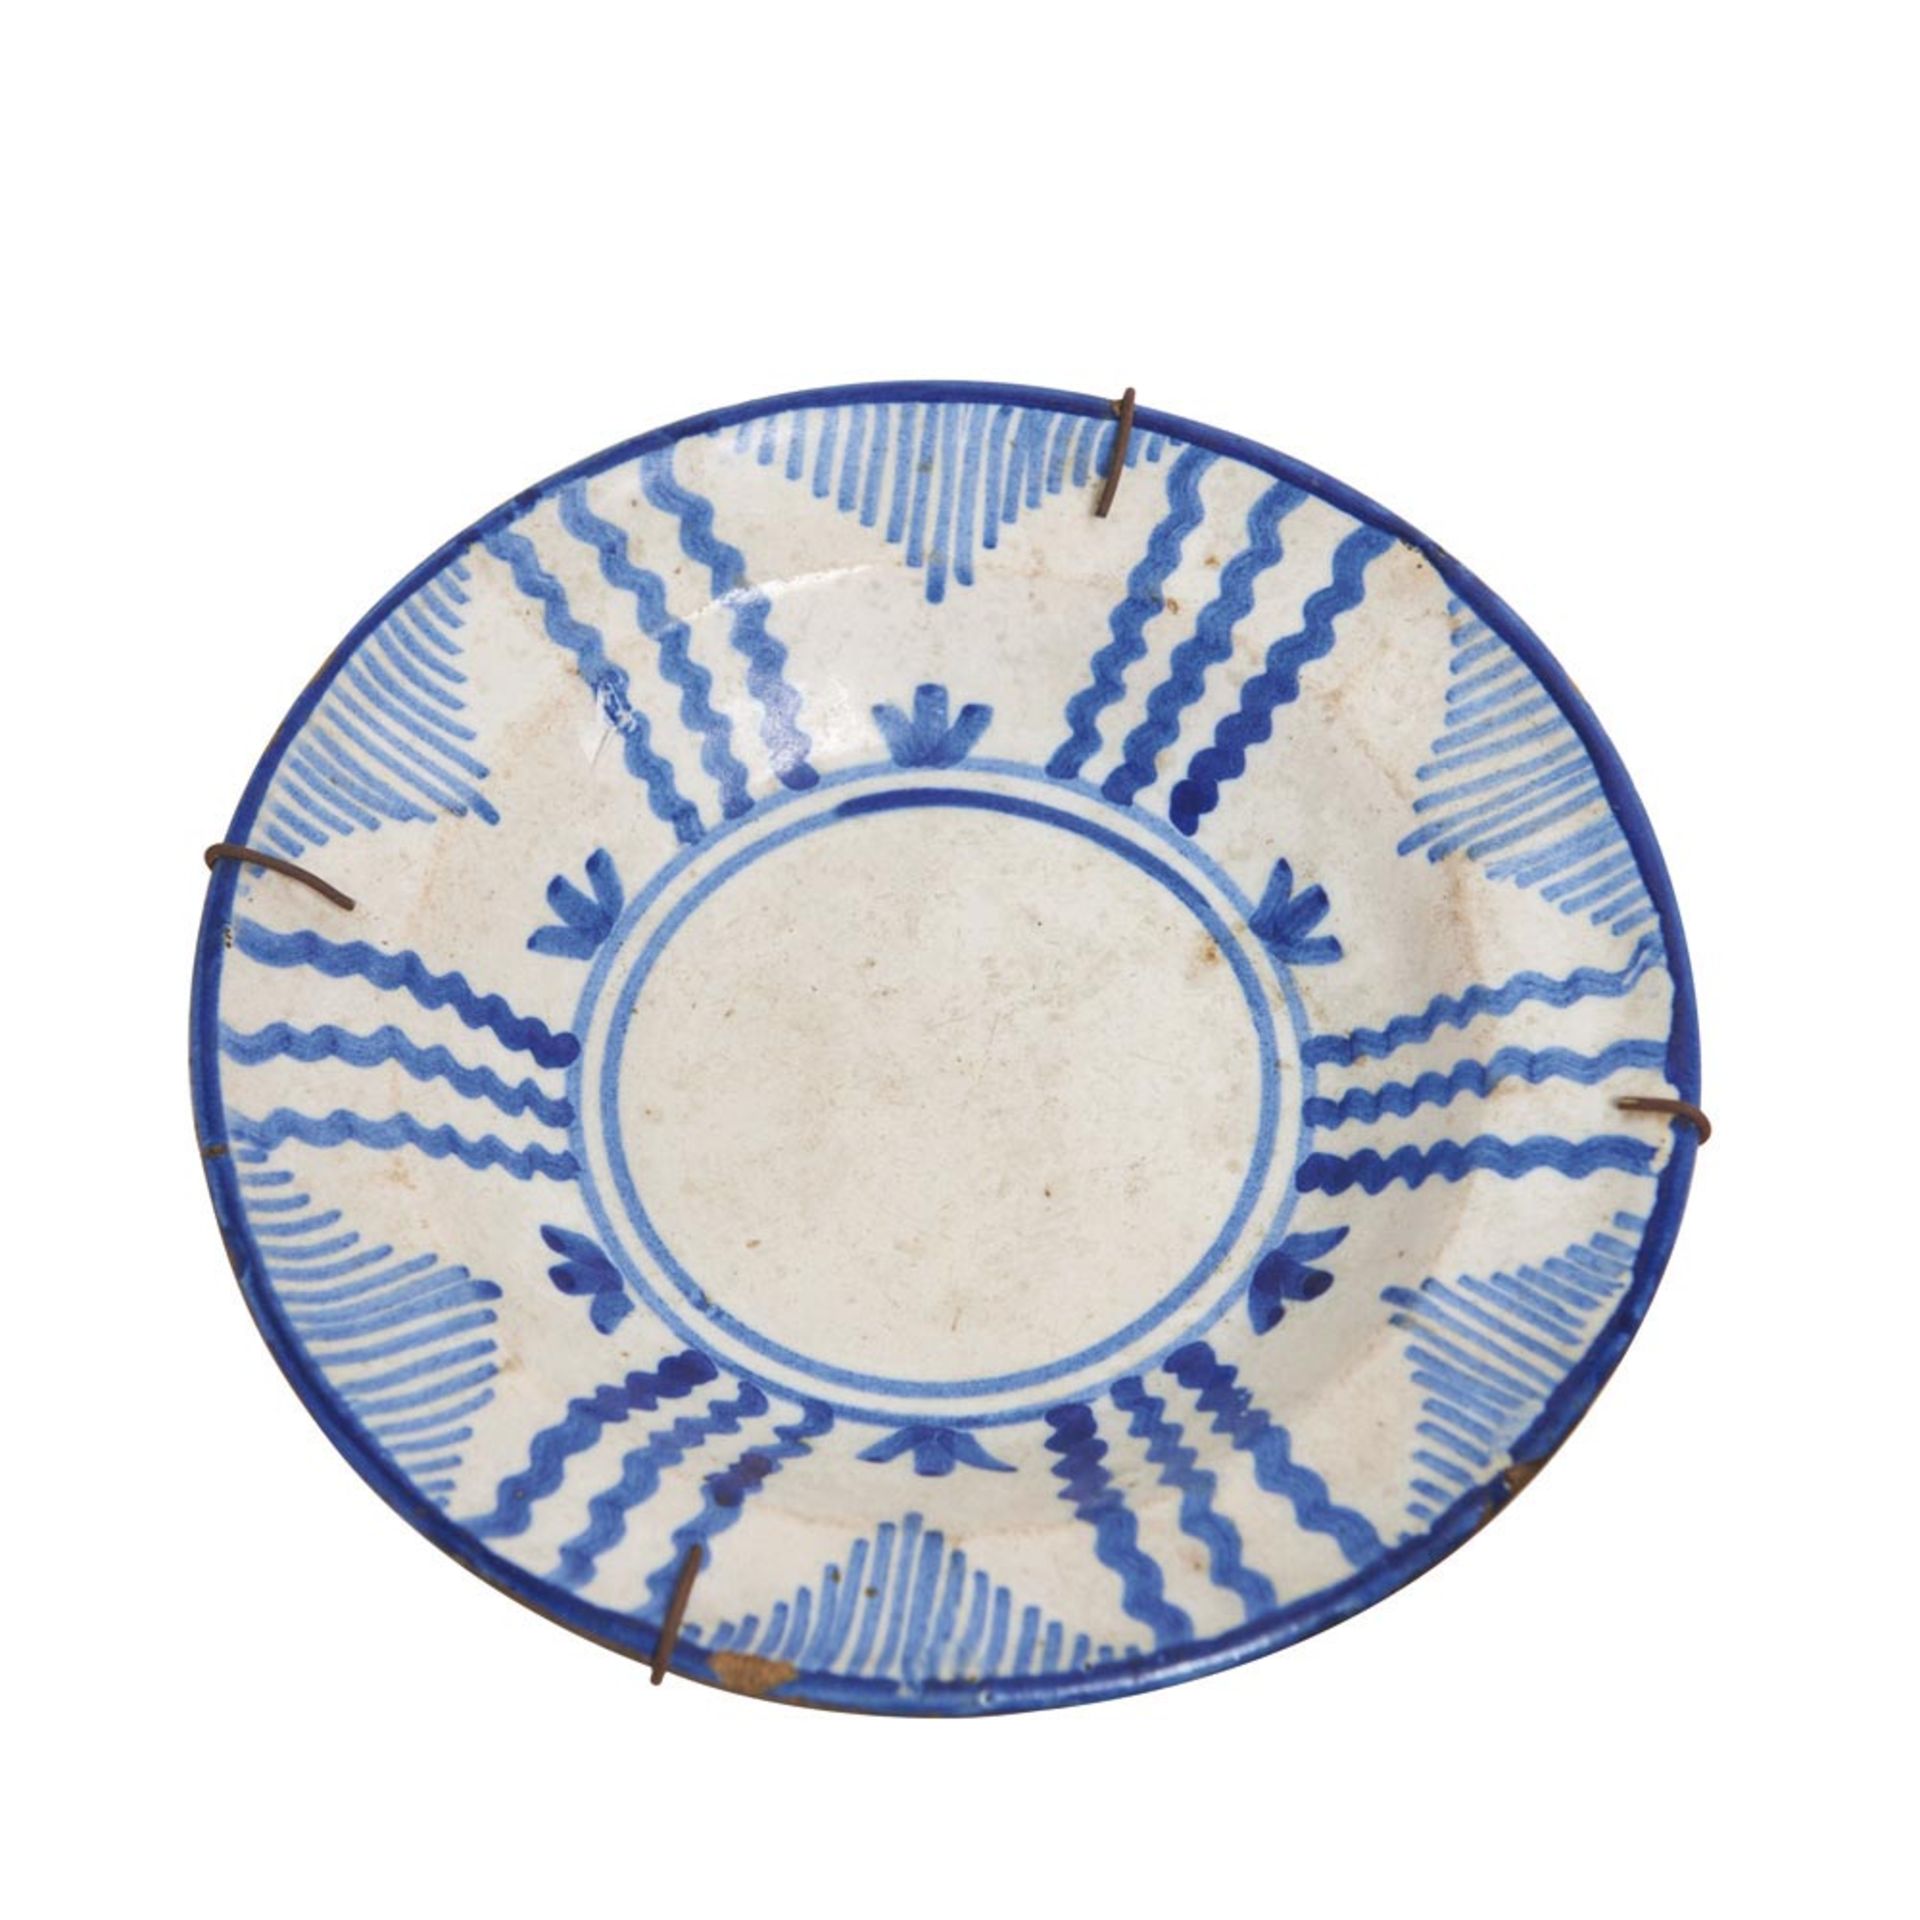 Spanish blue and white glazed ceramic plates 19th century. Plato de Manises en cerámica esmaltada - Bild 2 aus 3